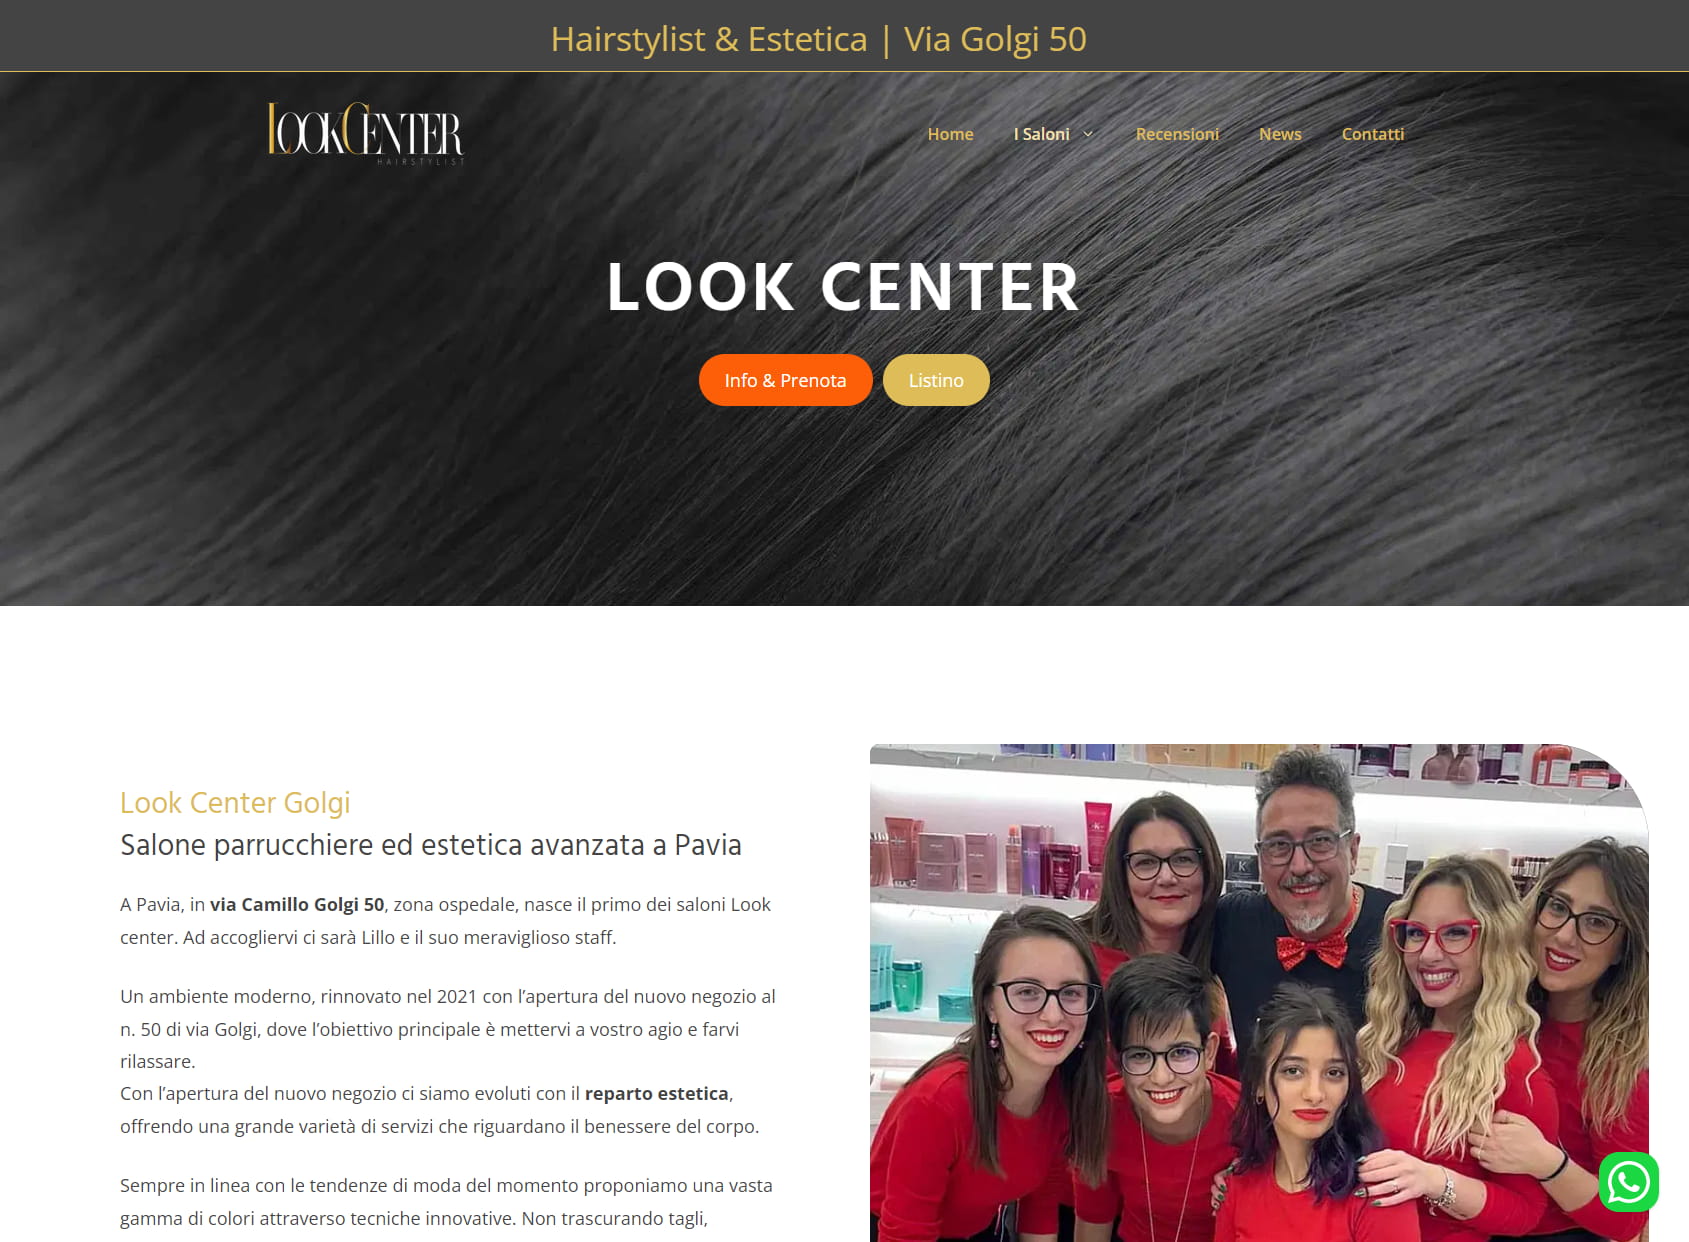 Look Center - Hairstylist & Estetica - Parrucchiere Pavia